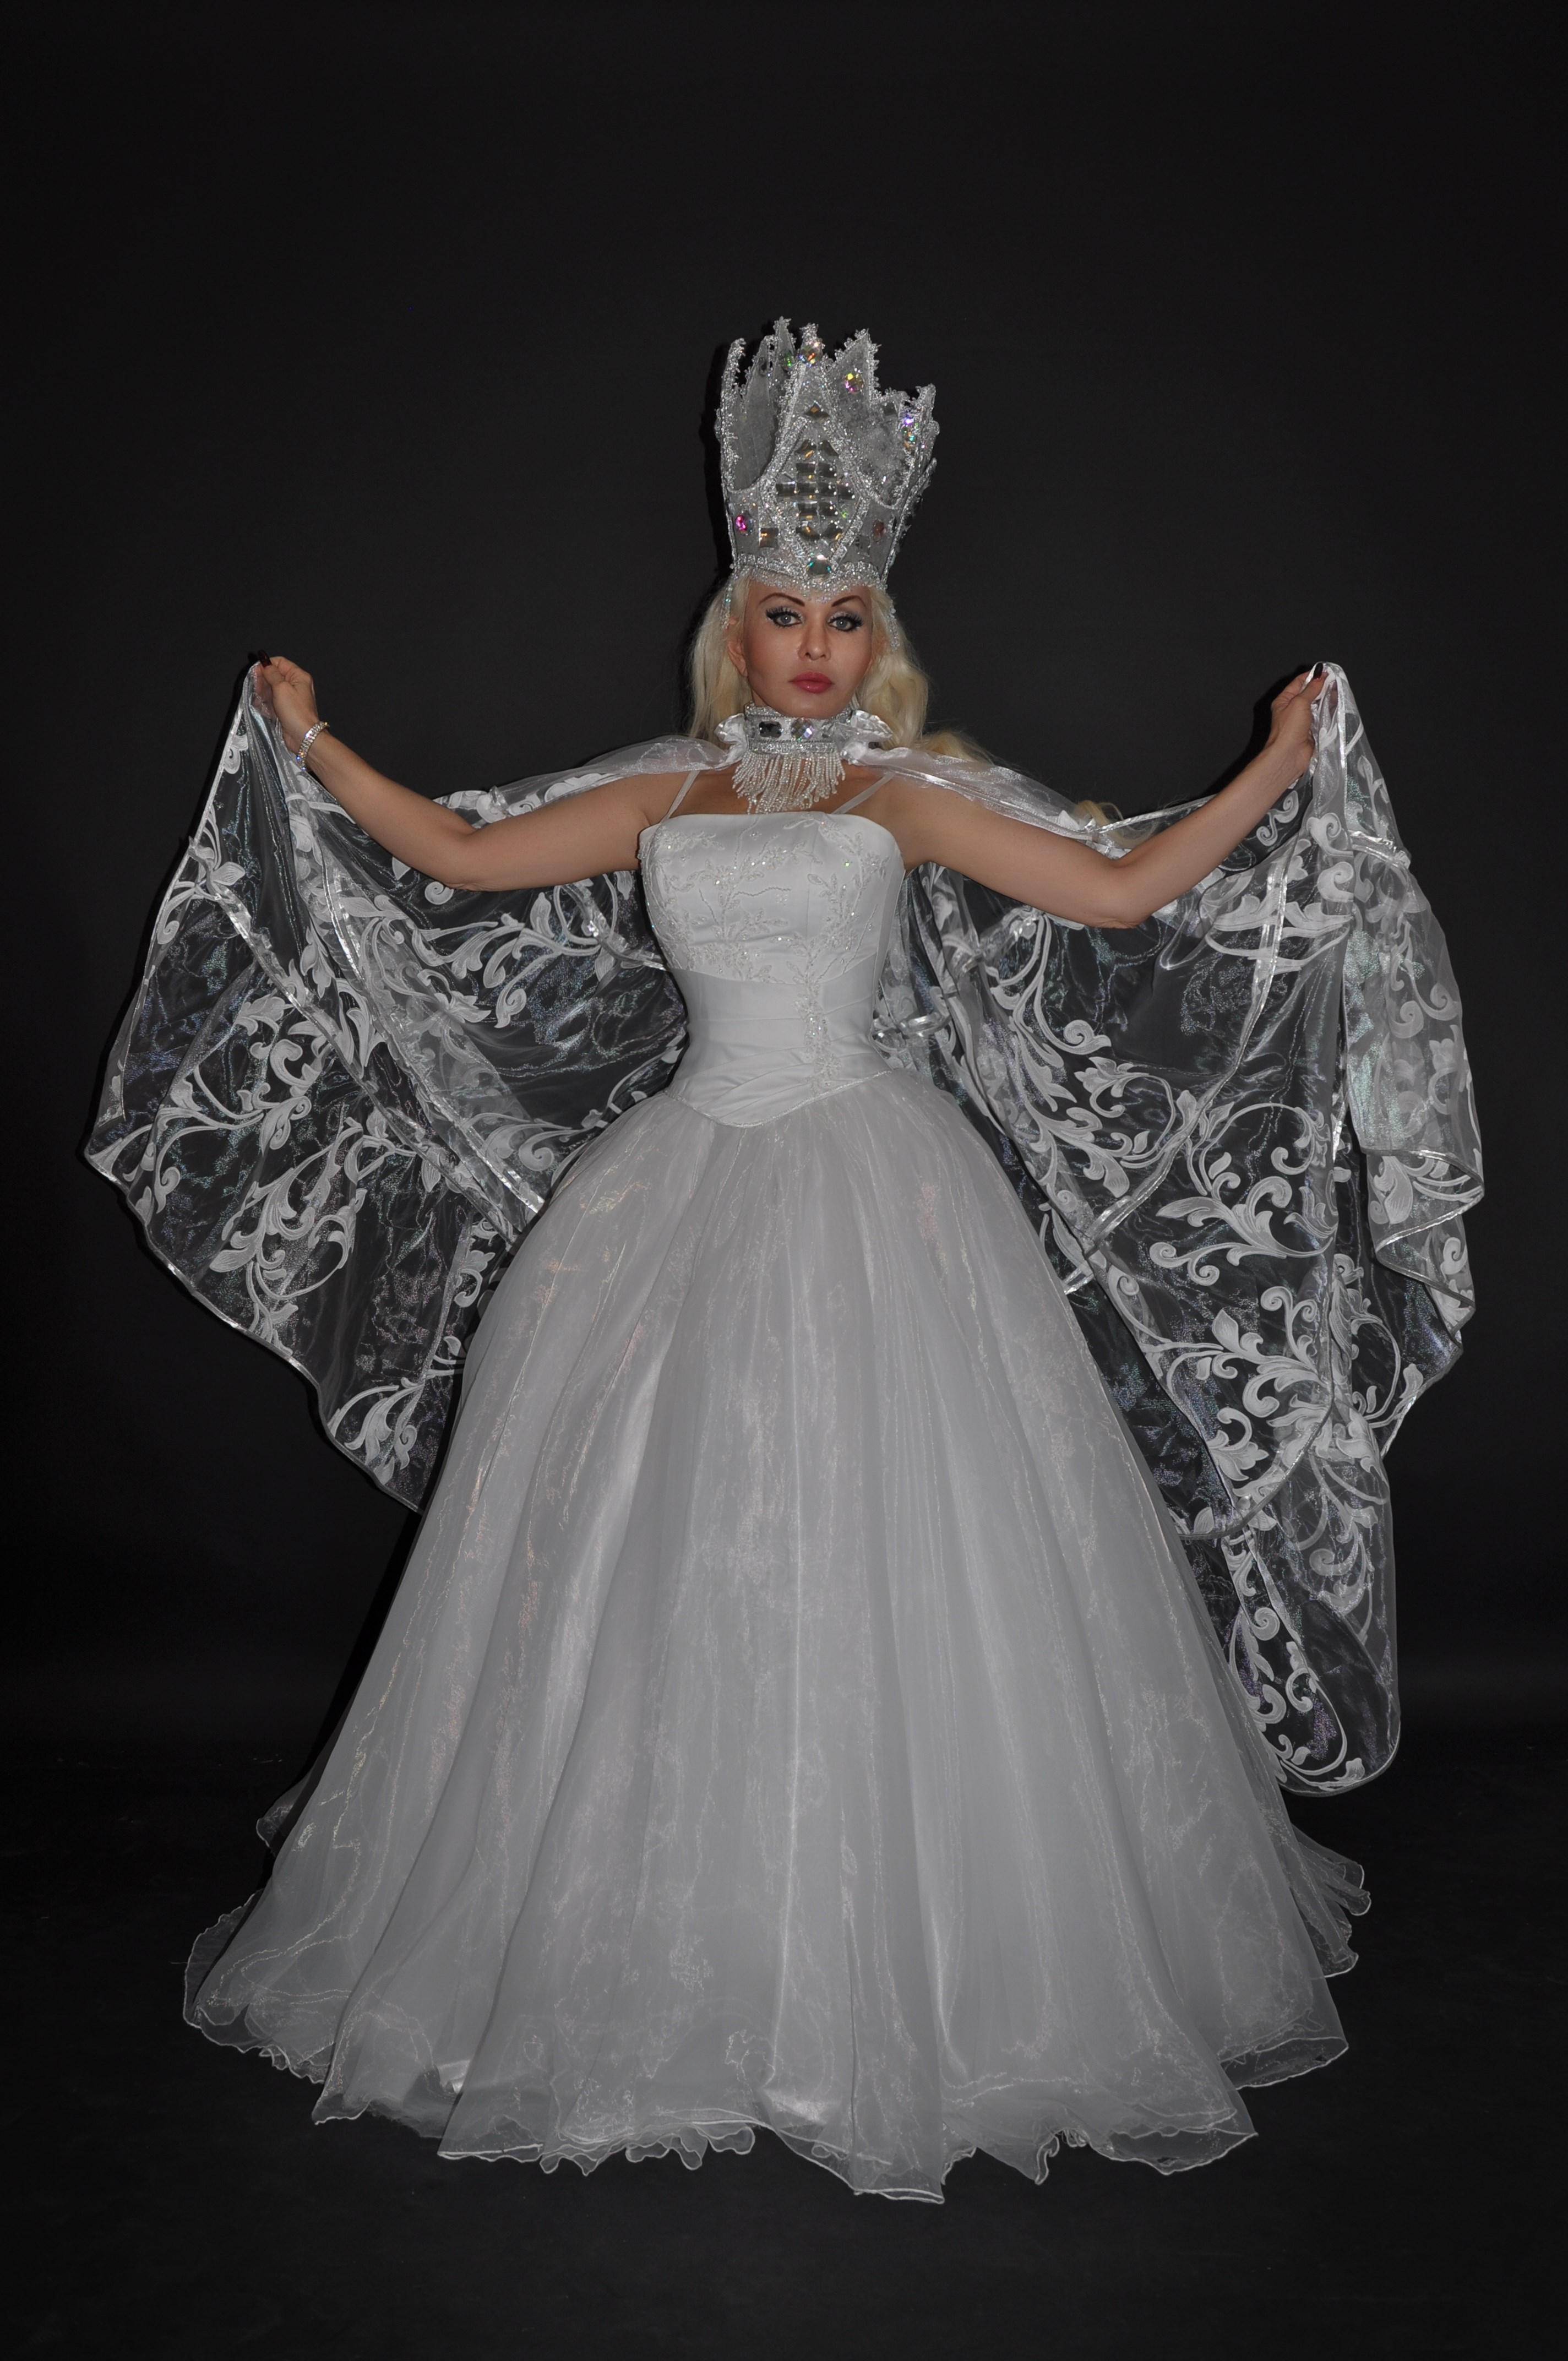 Коломбина костюм снежной королевы